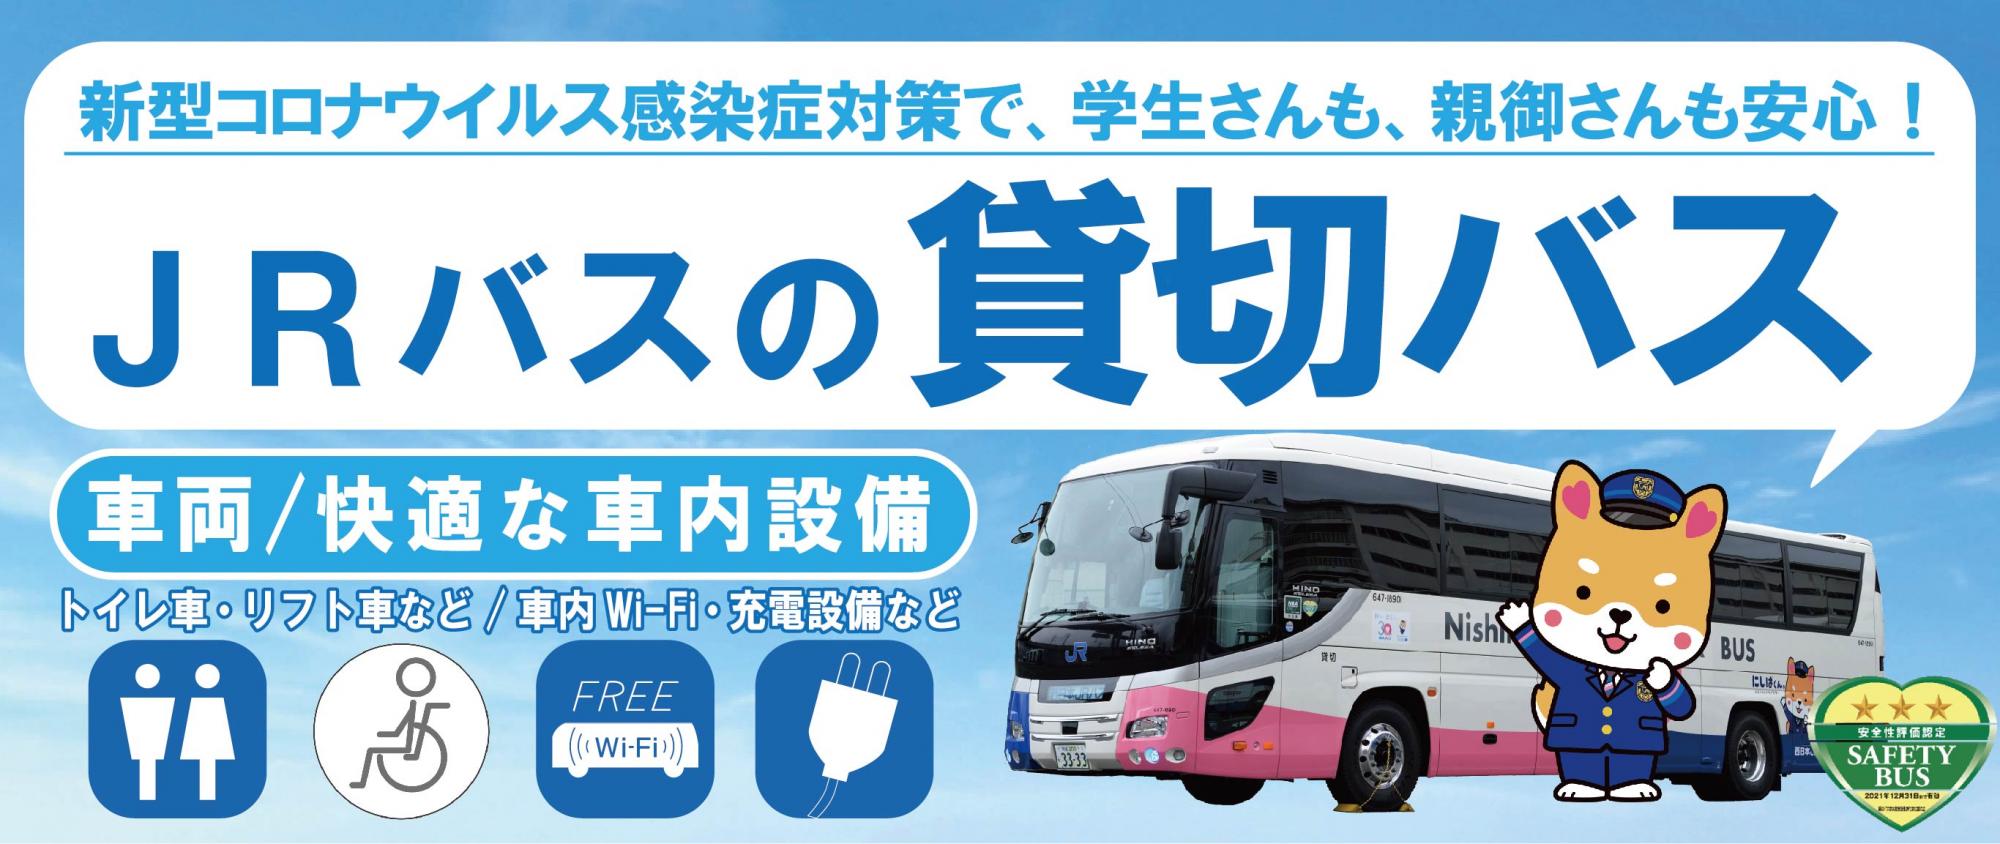 情報 運行 jr 西日本 スマートフォン・アプリで列車の運行情報をプッシュ通知するサービスを開始します。：JR西日本